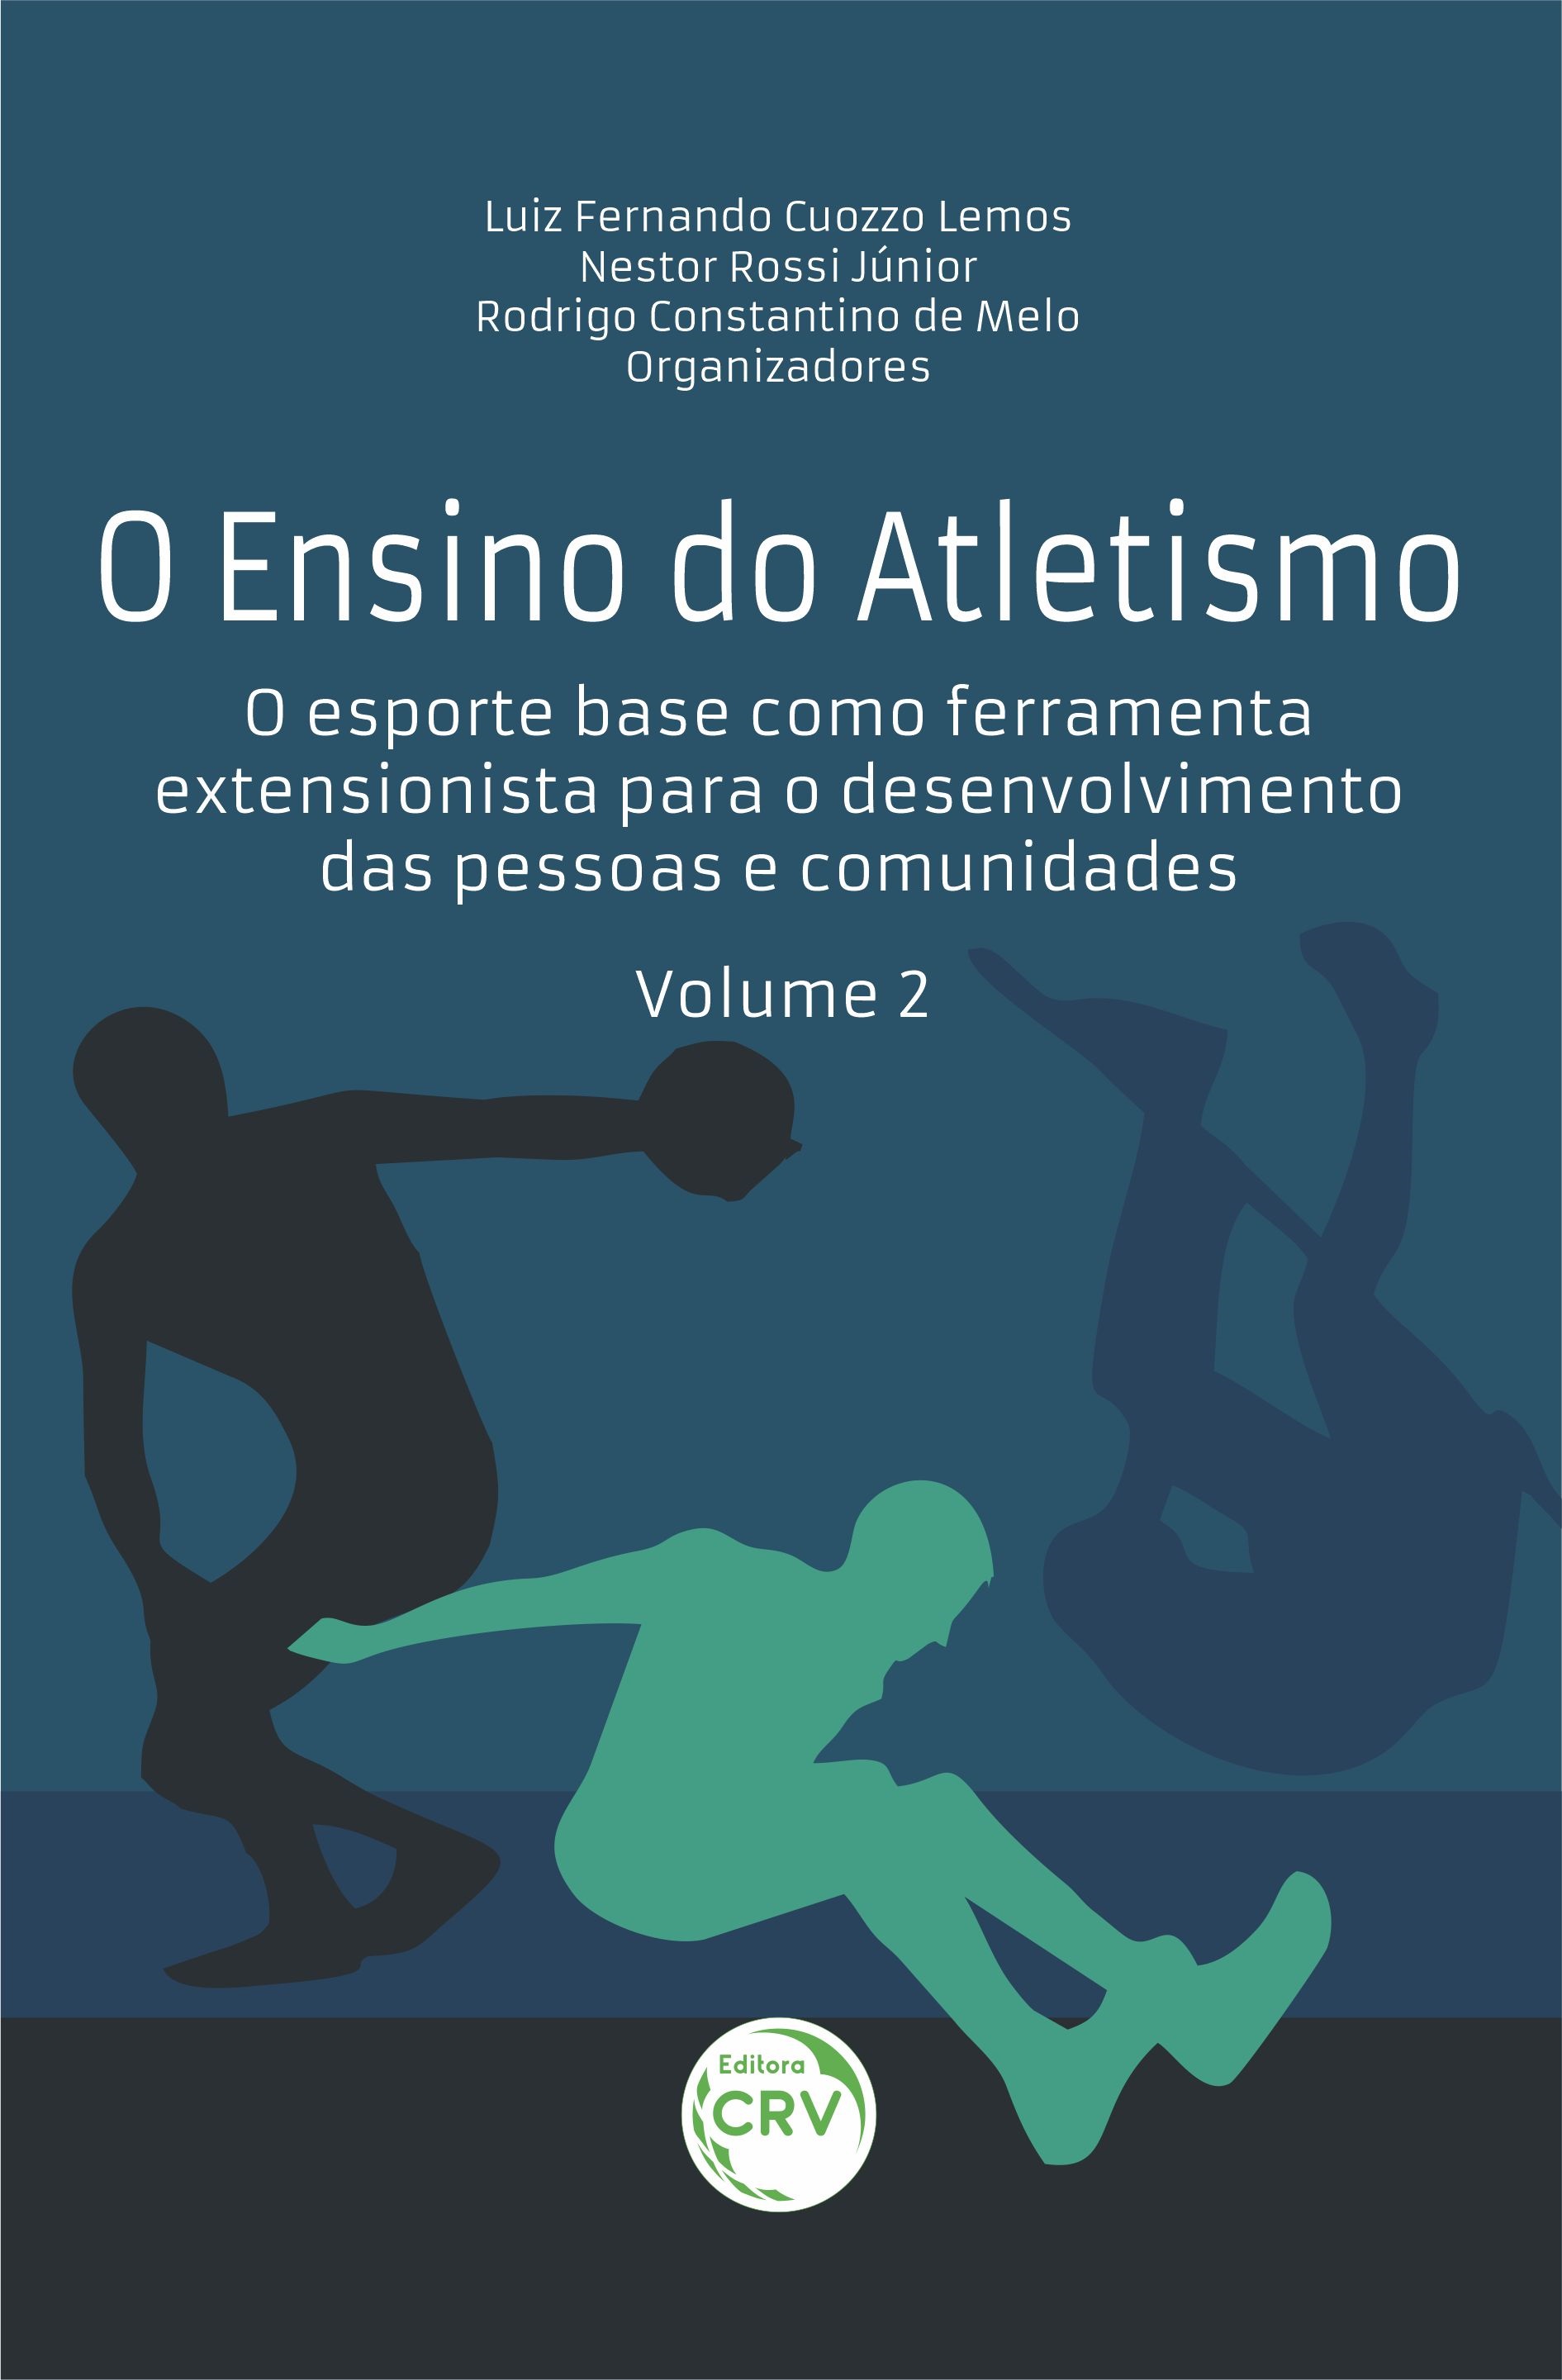 Capa do livro: O ENSINO DO ATLETISMO: <br>O esporte base como ferramenta extensionista para o desenvolvimento das pessoas e comunidades<br> VOLUME 2